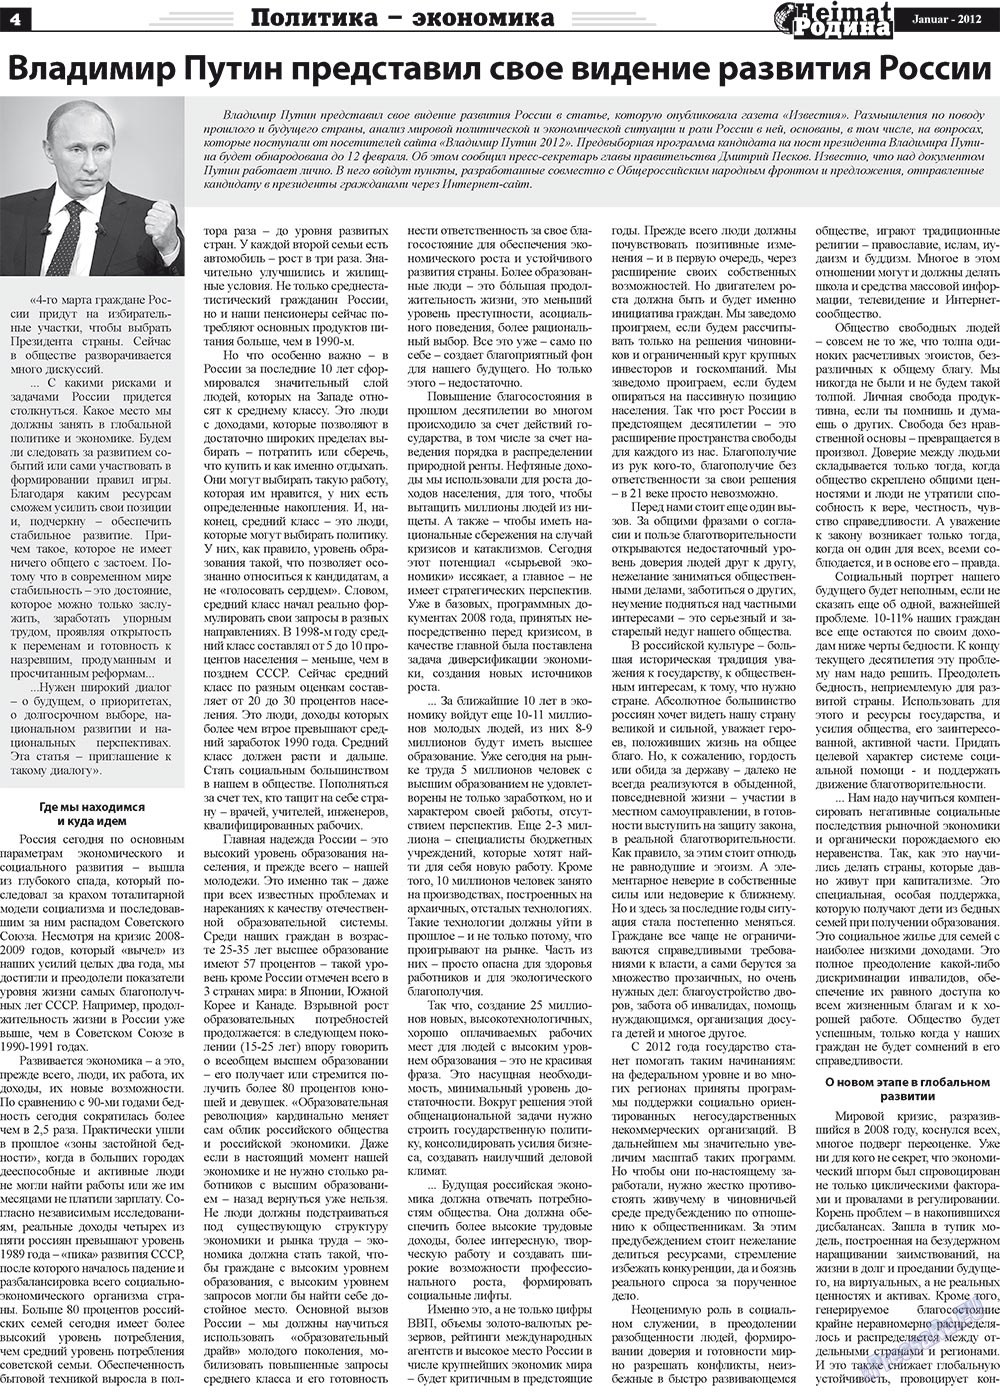 Heimat-Родина (Zeitung). 2012 Jahr, Ausgabe 1, Seite 4